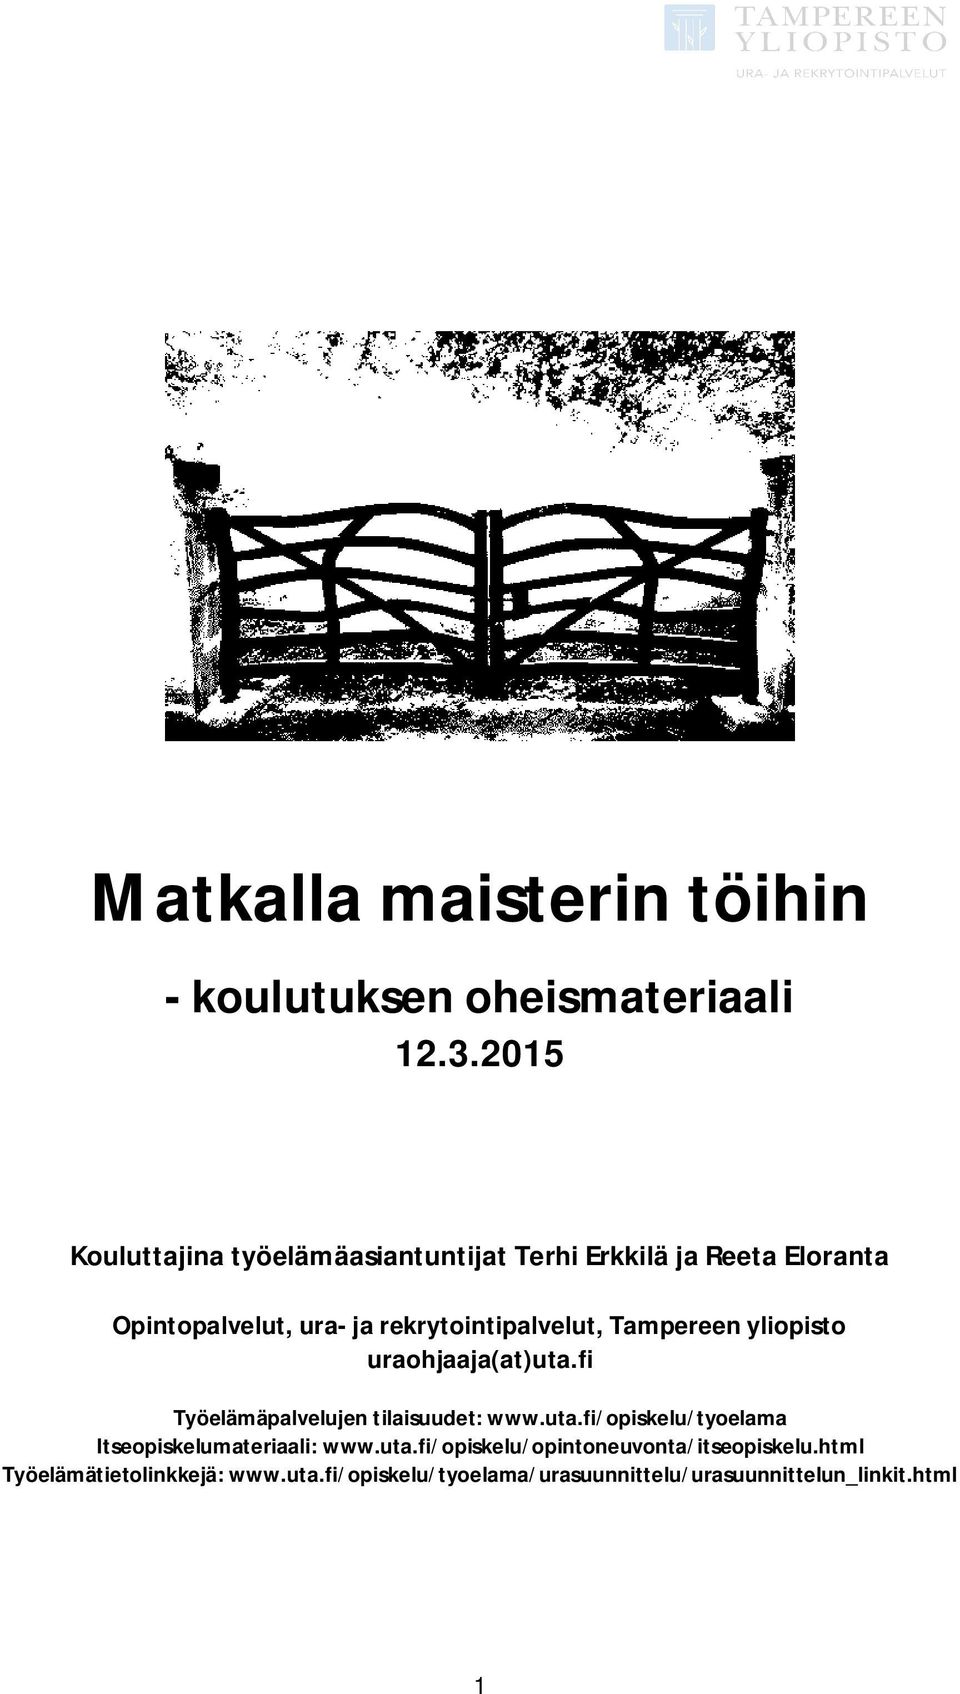 rekrytointipalvelut, Tampereen yliopisto uraohjaaja(at)uta.fi Työelämäpalvelujen tilaisuudet: www.uta.fi/opiskelu/tyoelama Itseopiskelumateriaali: www.